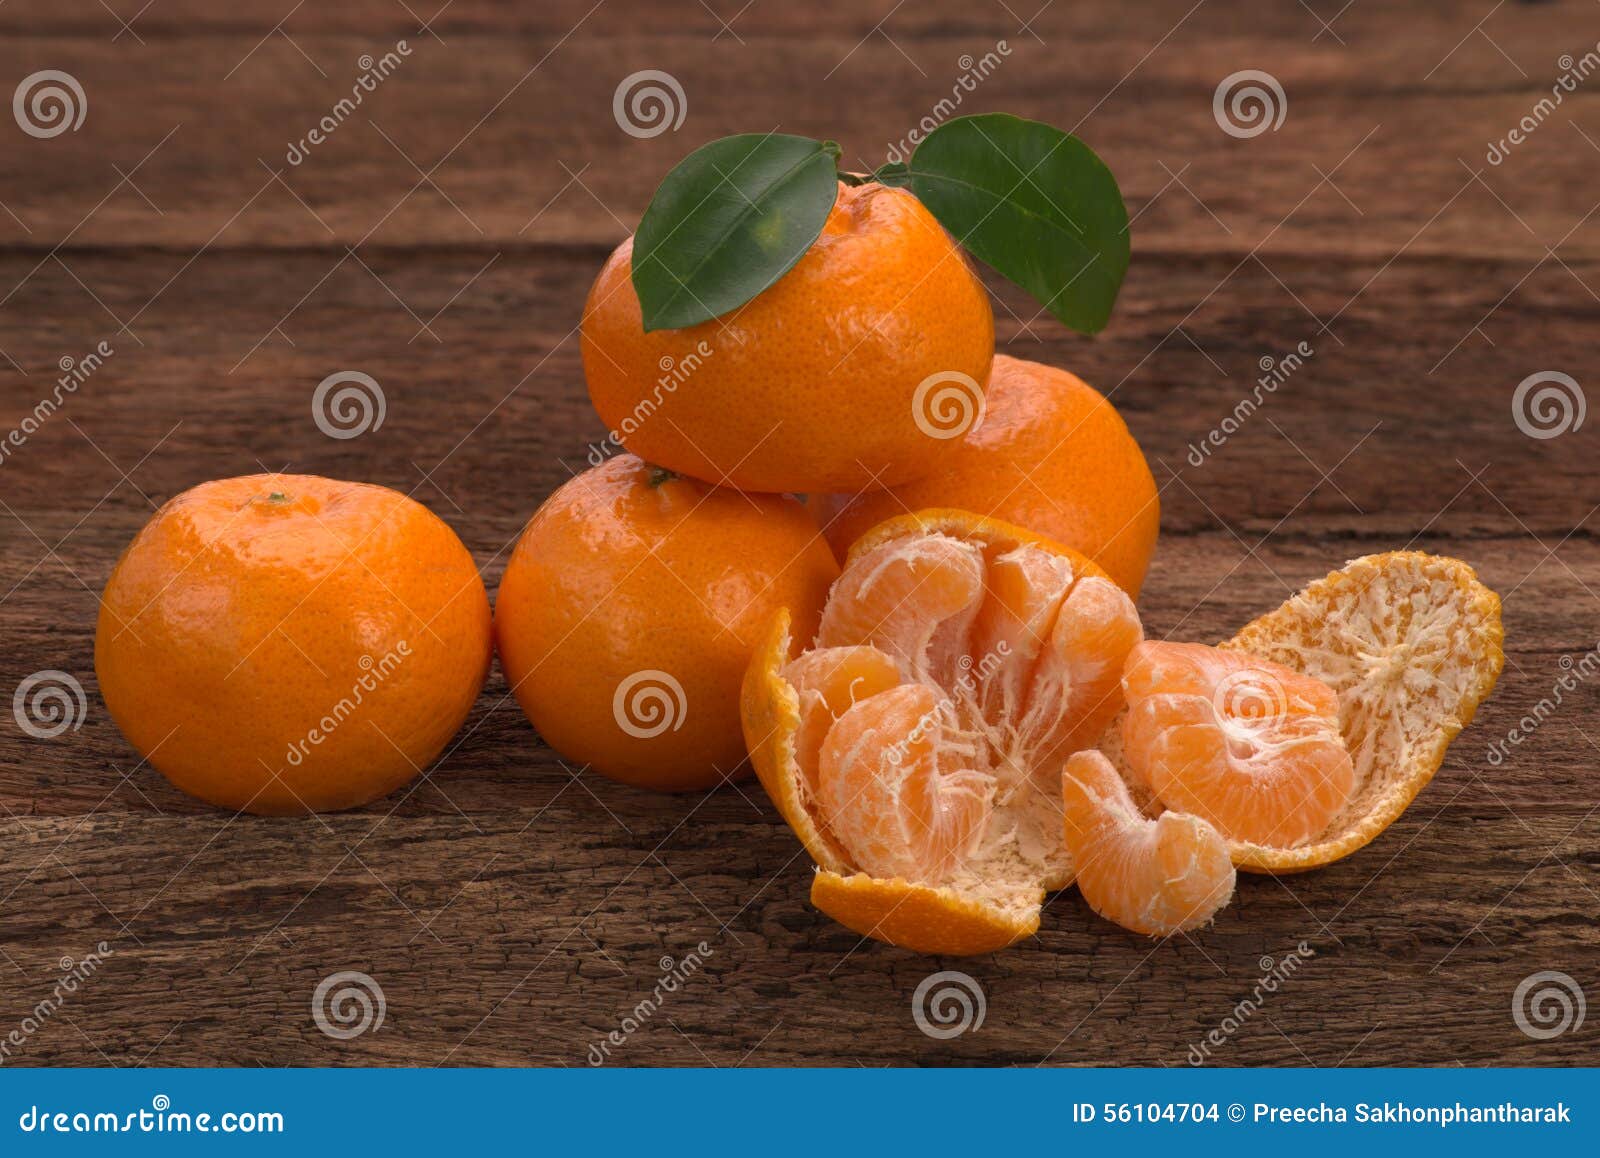 Fruta madura del mandarín con las hojas y un abierto pelada. La fruta madura del mandarín con verde se va y un lugar abierto pelado en la madera rústica vieja de la mirada